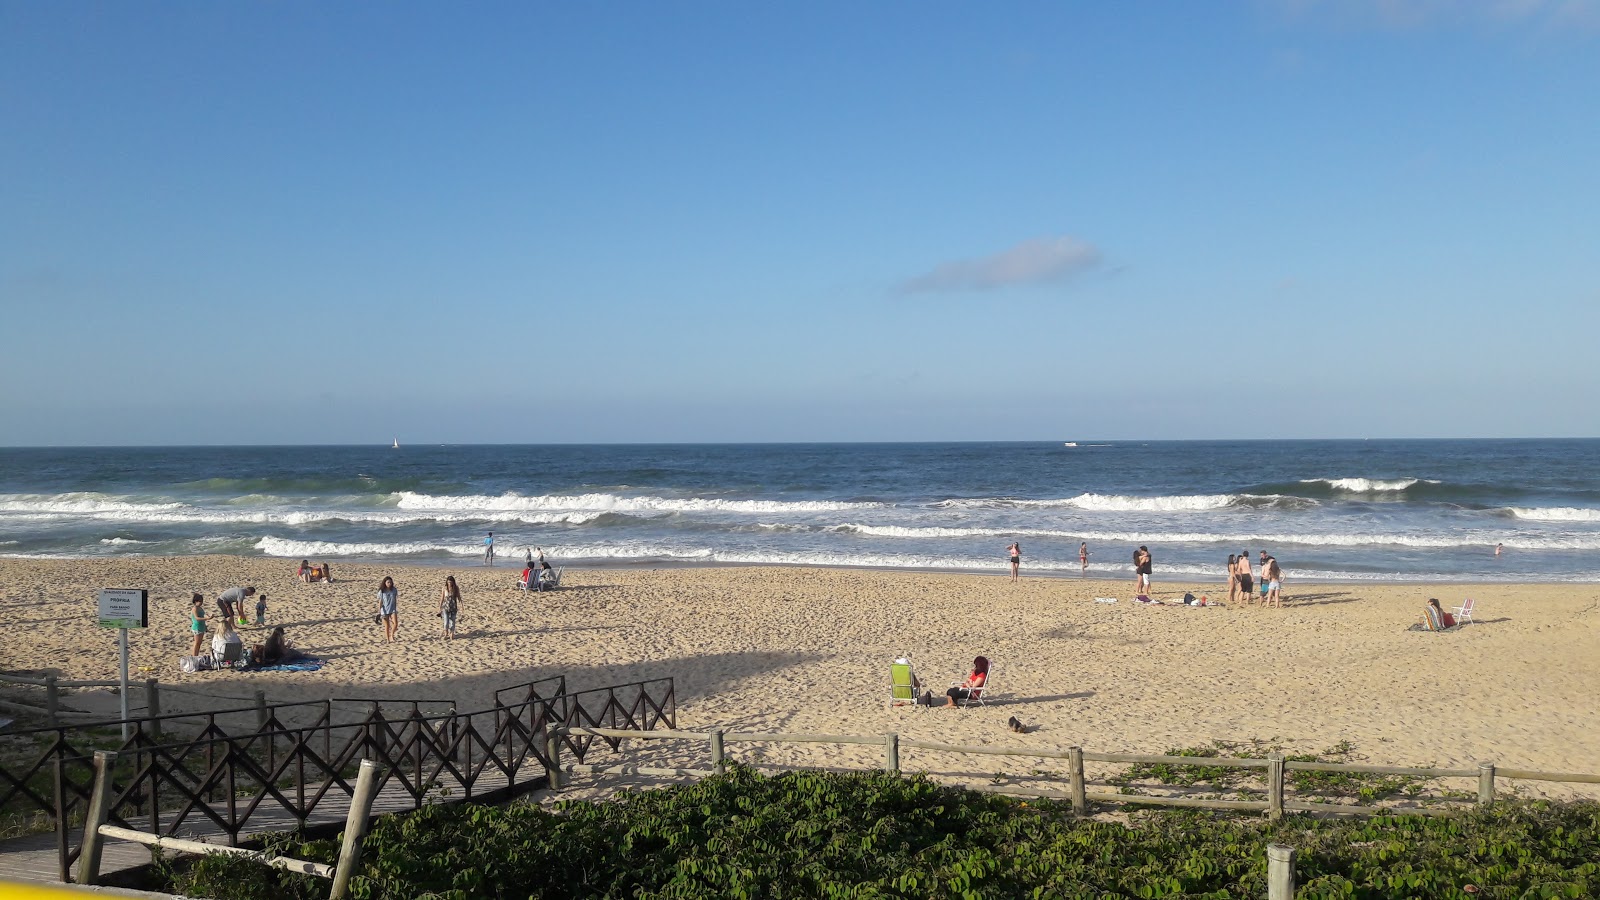 Foto af Praia dos Amores - populært sted blandt afslapningskendere